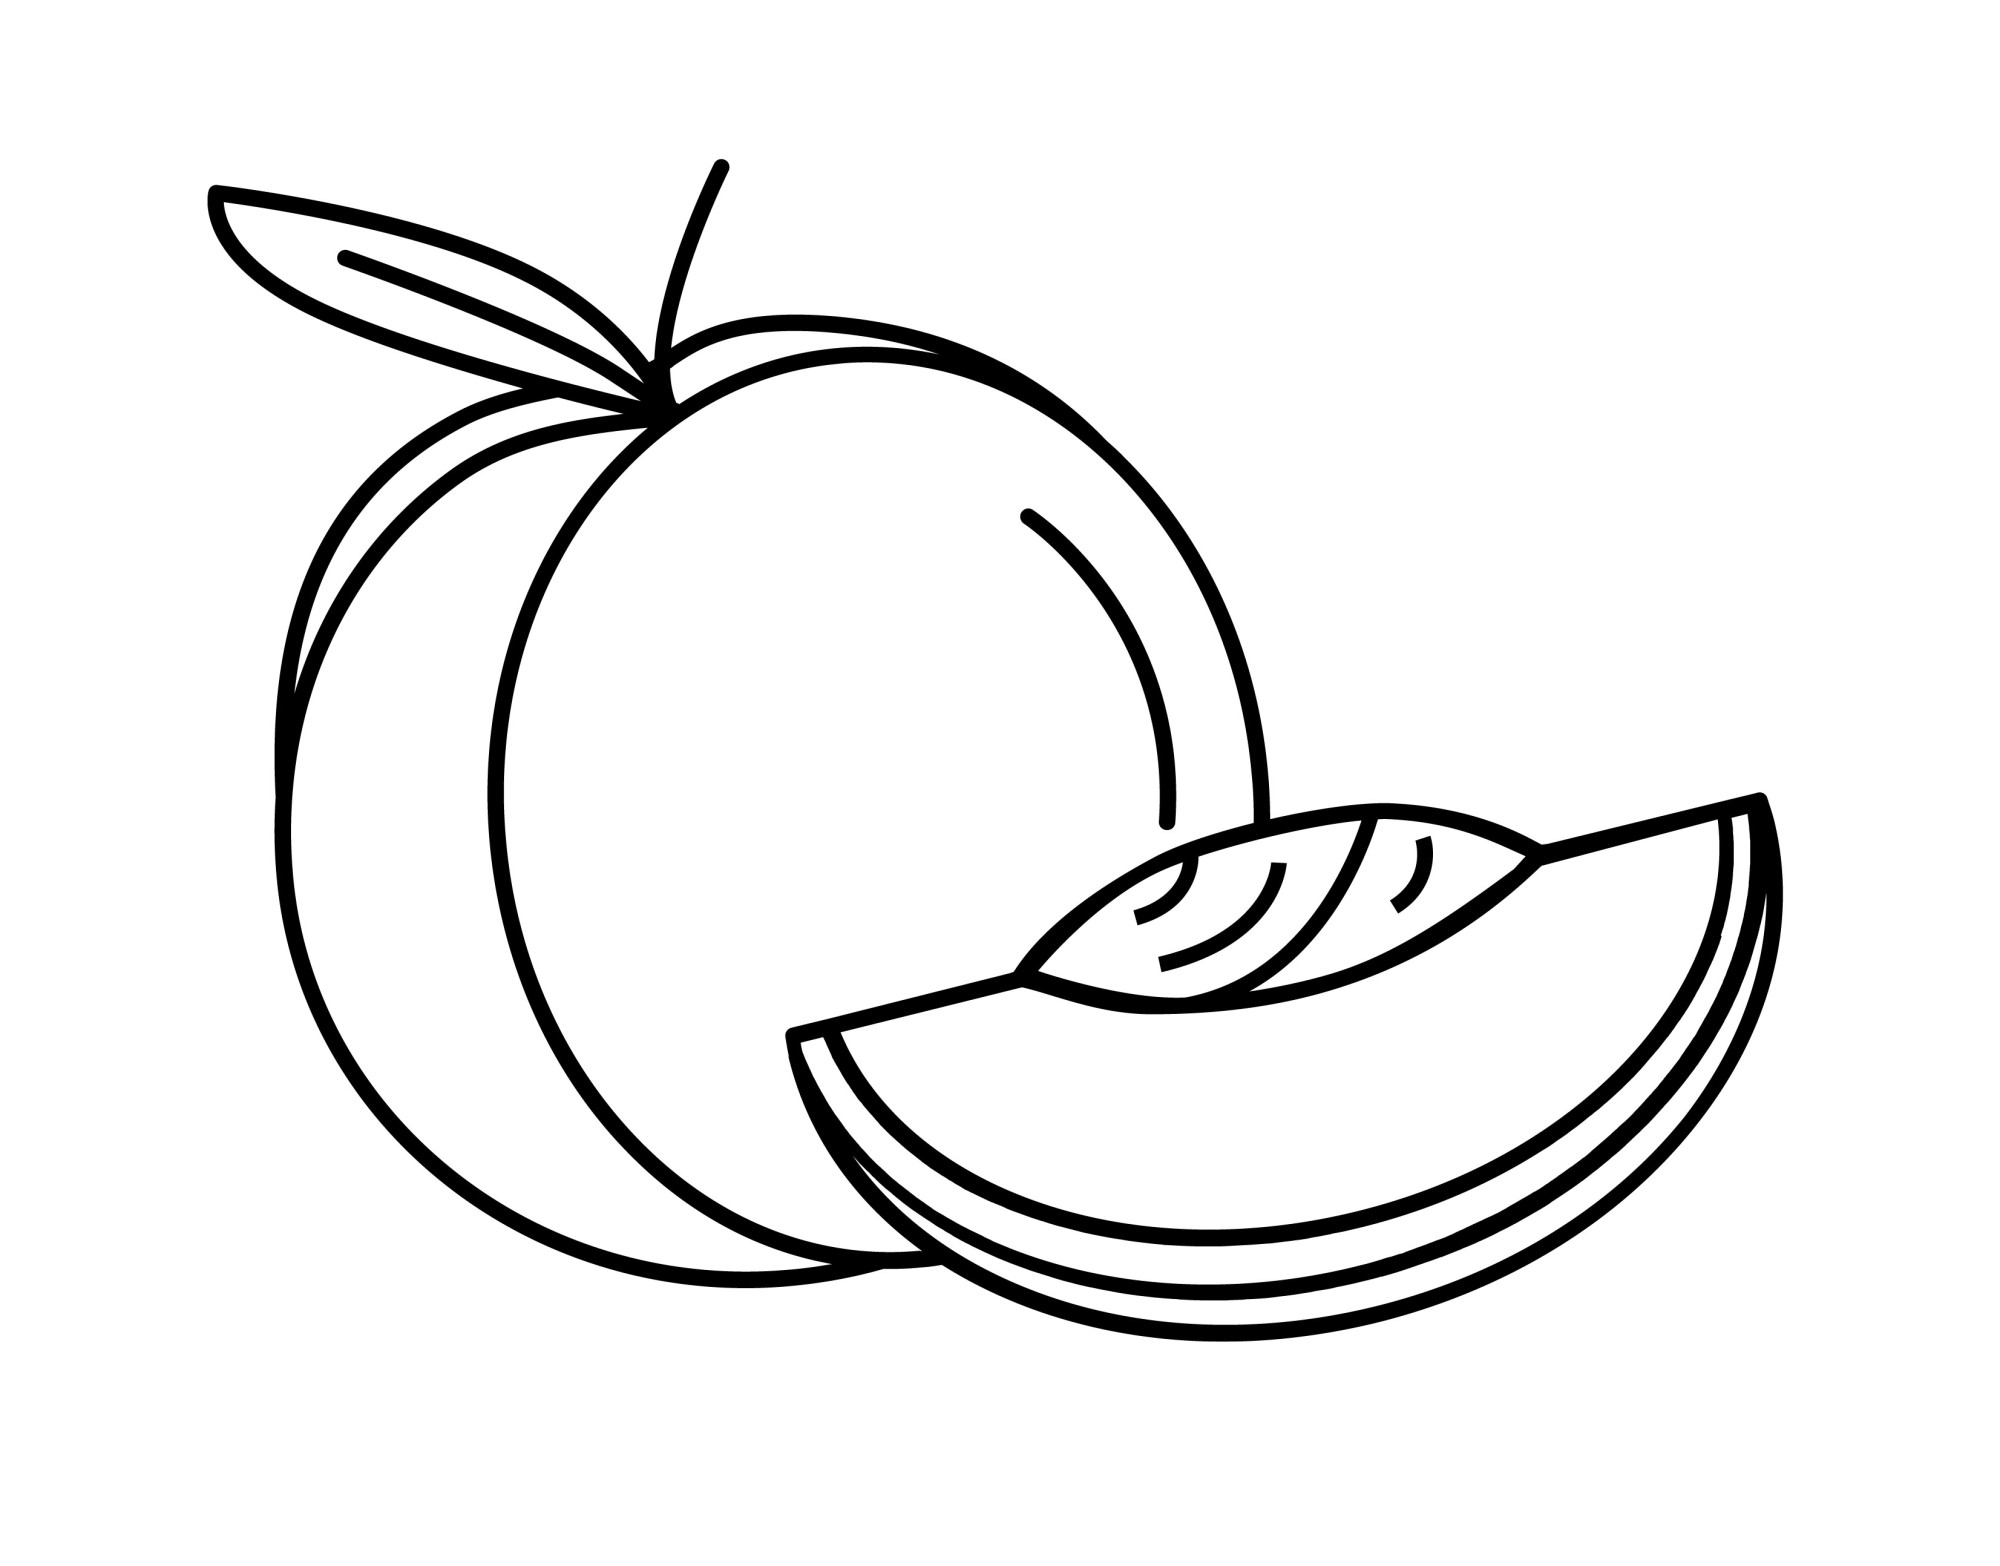 Раскраска для детей: мягкий персик с долькой